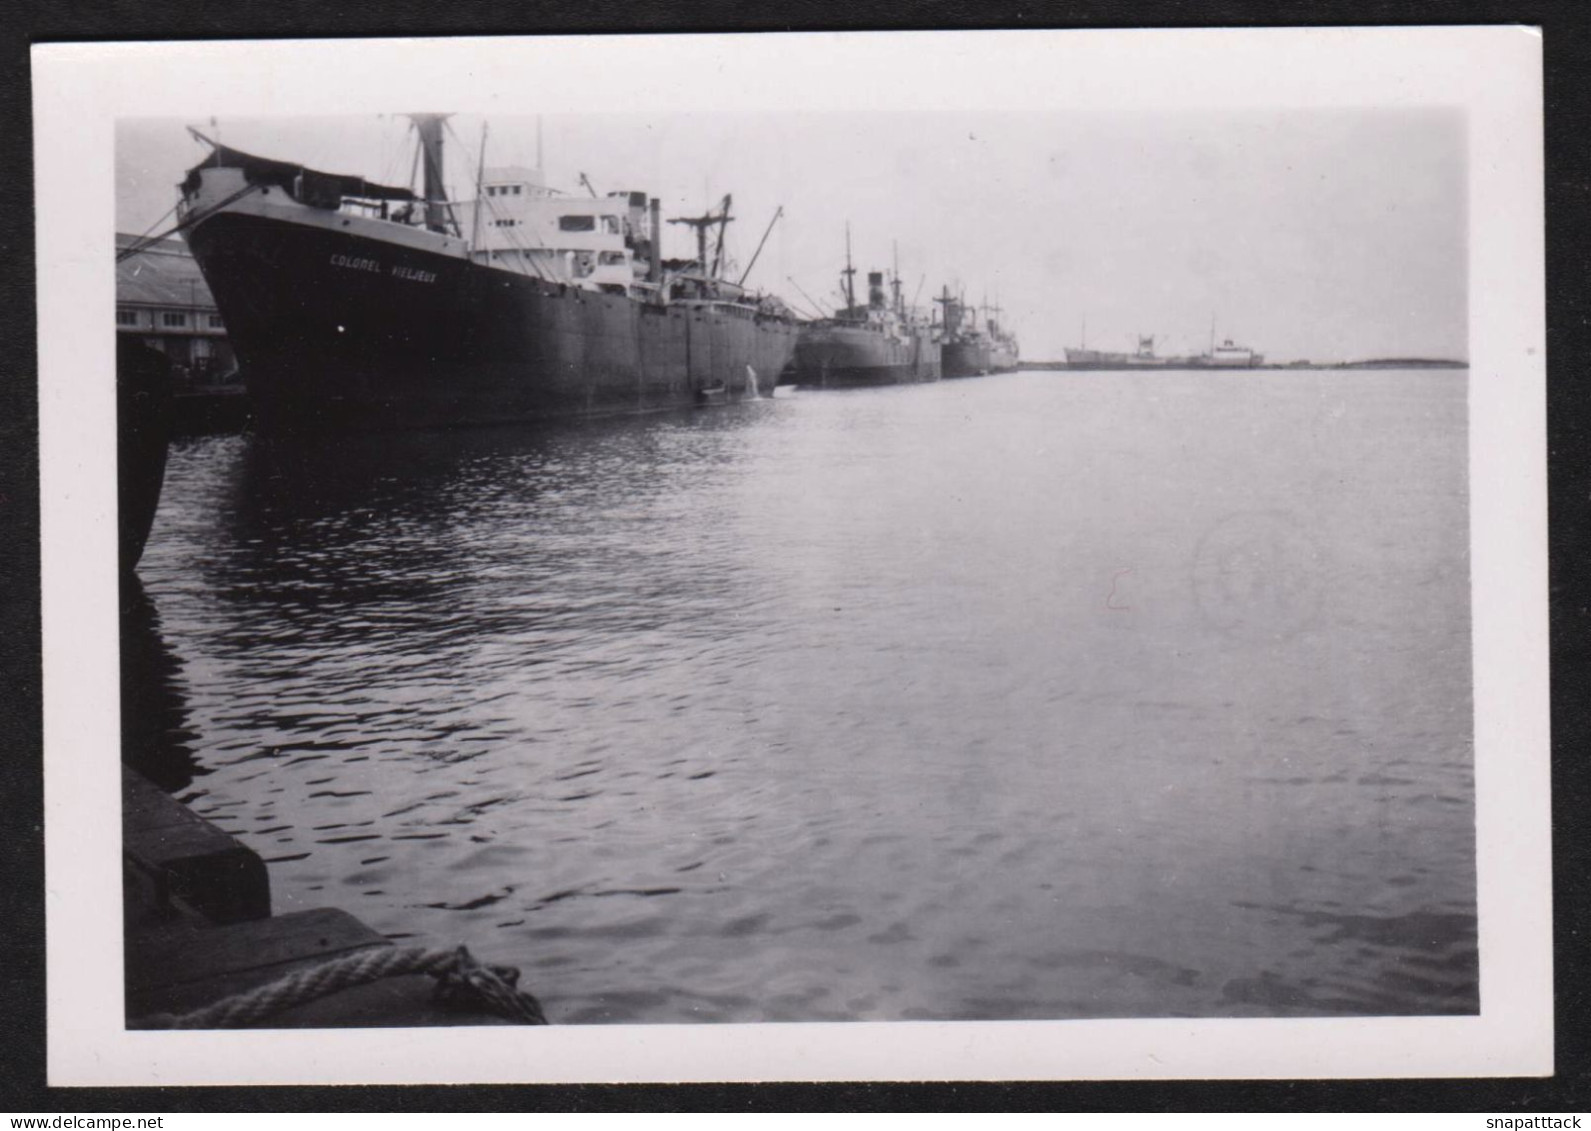 Jolie Photographie Du Bateau Cargo Colonel Vieljeux Dans Le Port De Pointe Noire, 40's, Format 6,2 X 8,9 Cm - Bateaux